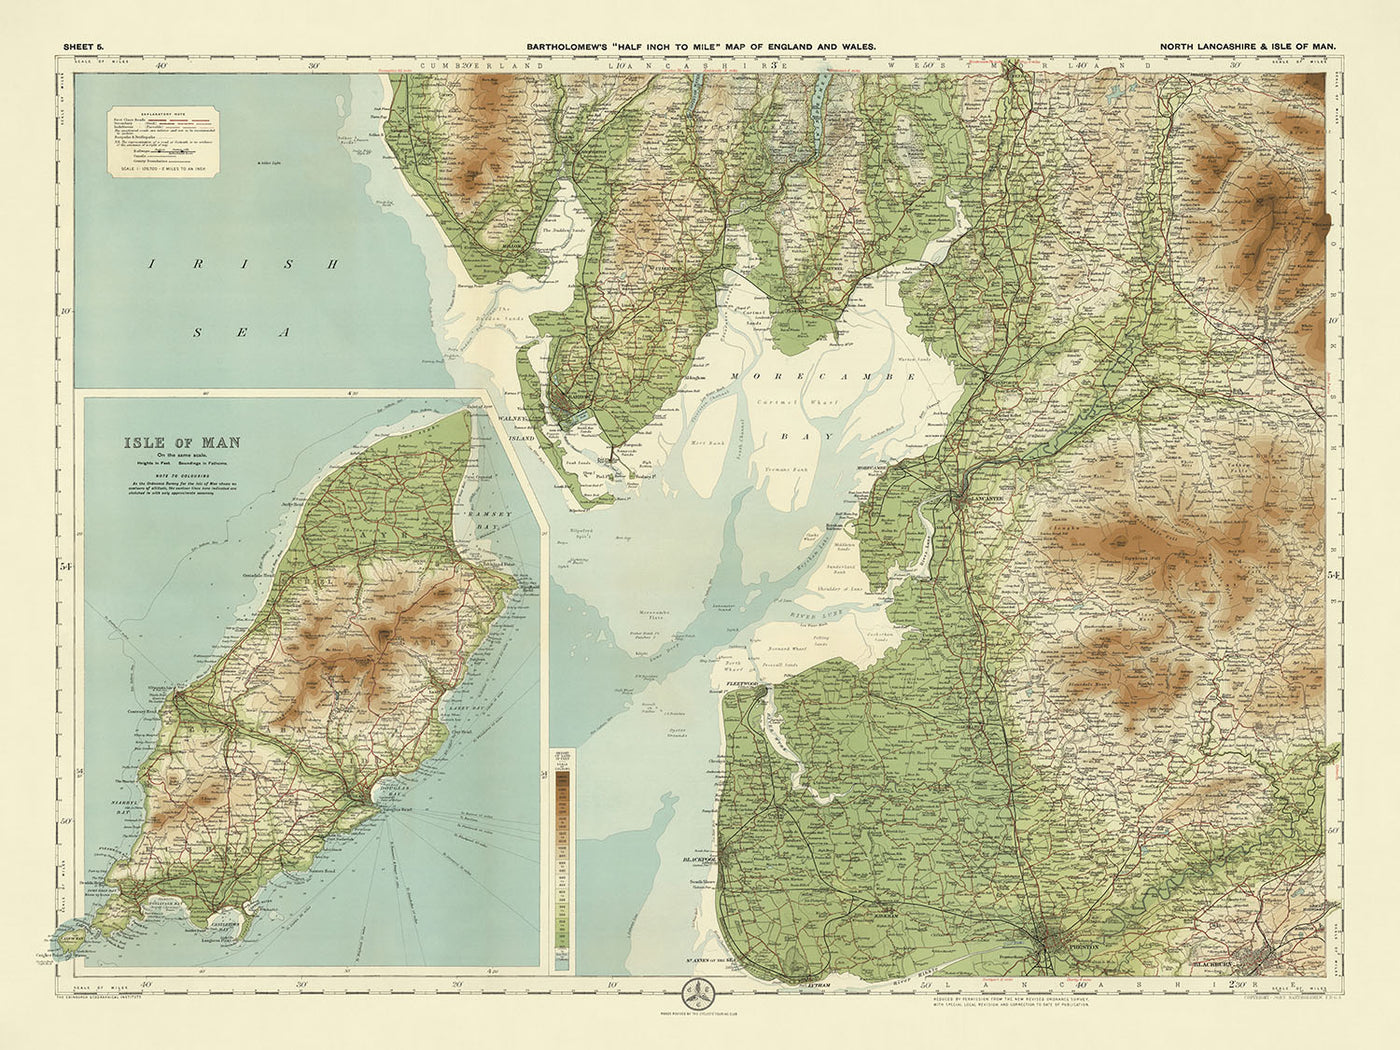 Old OS Map of North Lancashire & Isle of Man by Bartholomew, 1901: Lancaster, Douglas, Morecambe, Snaefell, Blackpool, Blackburn